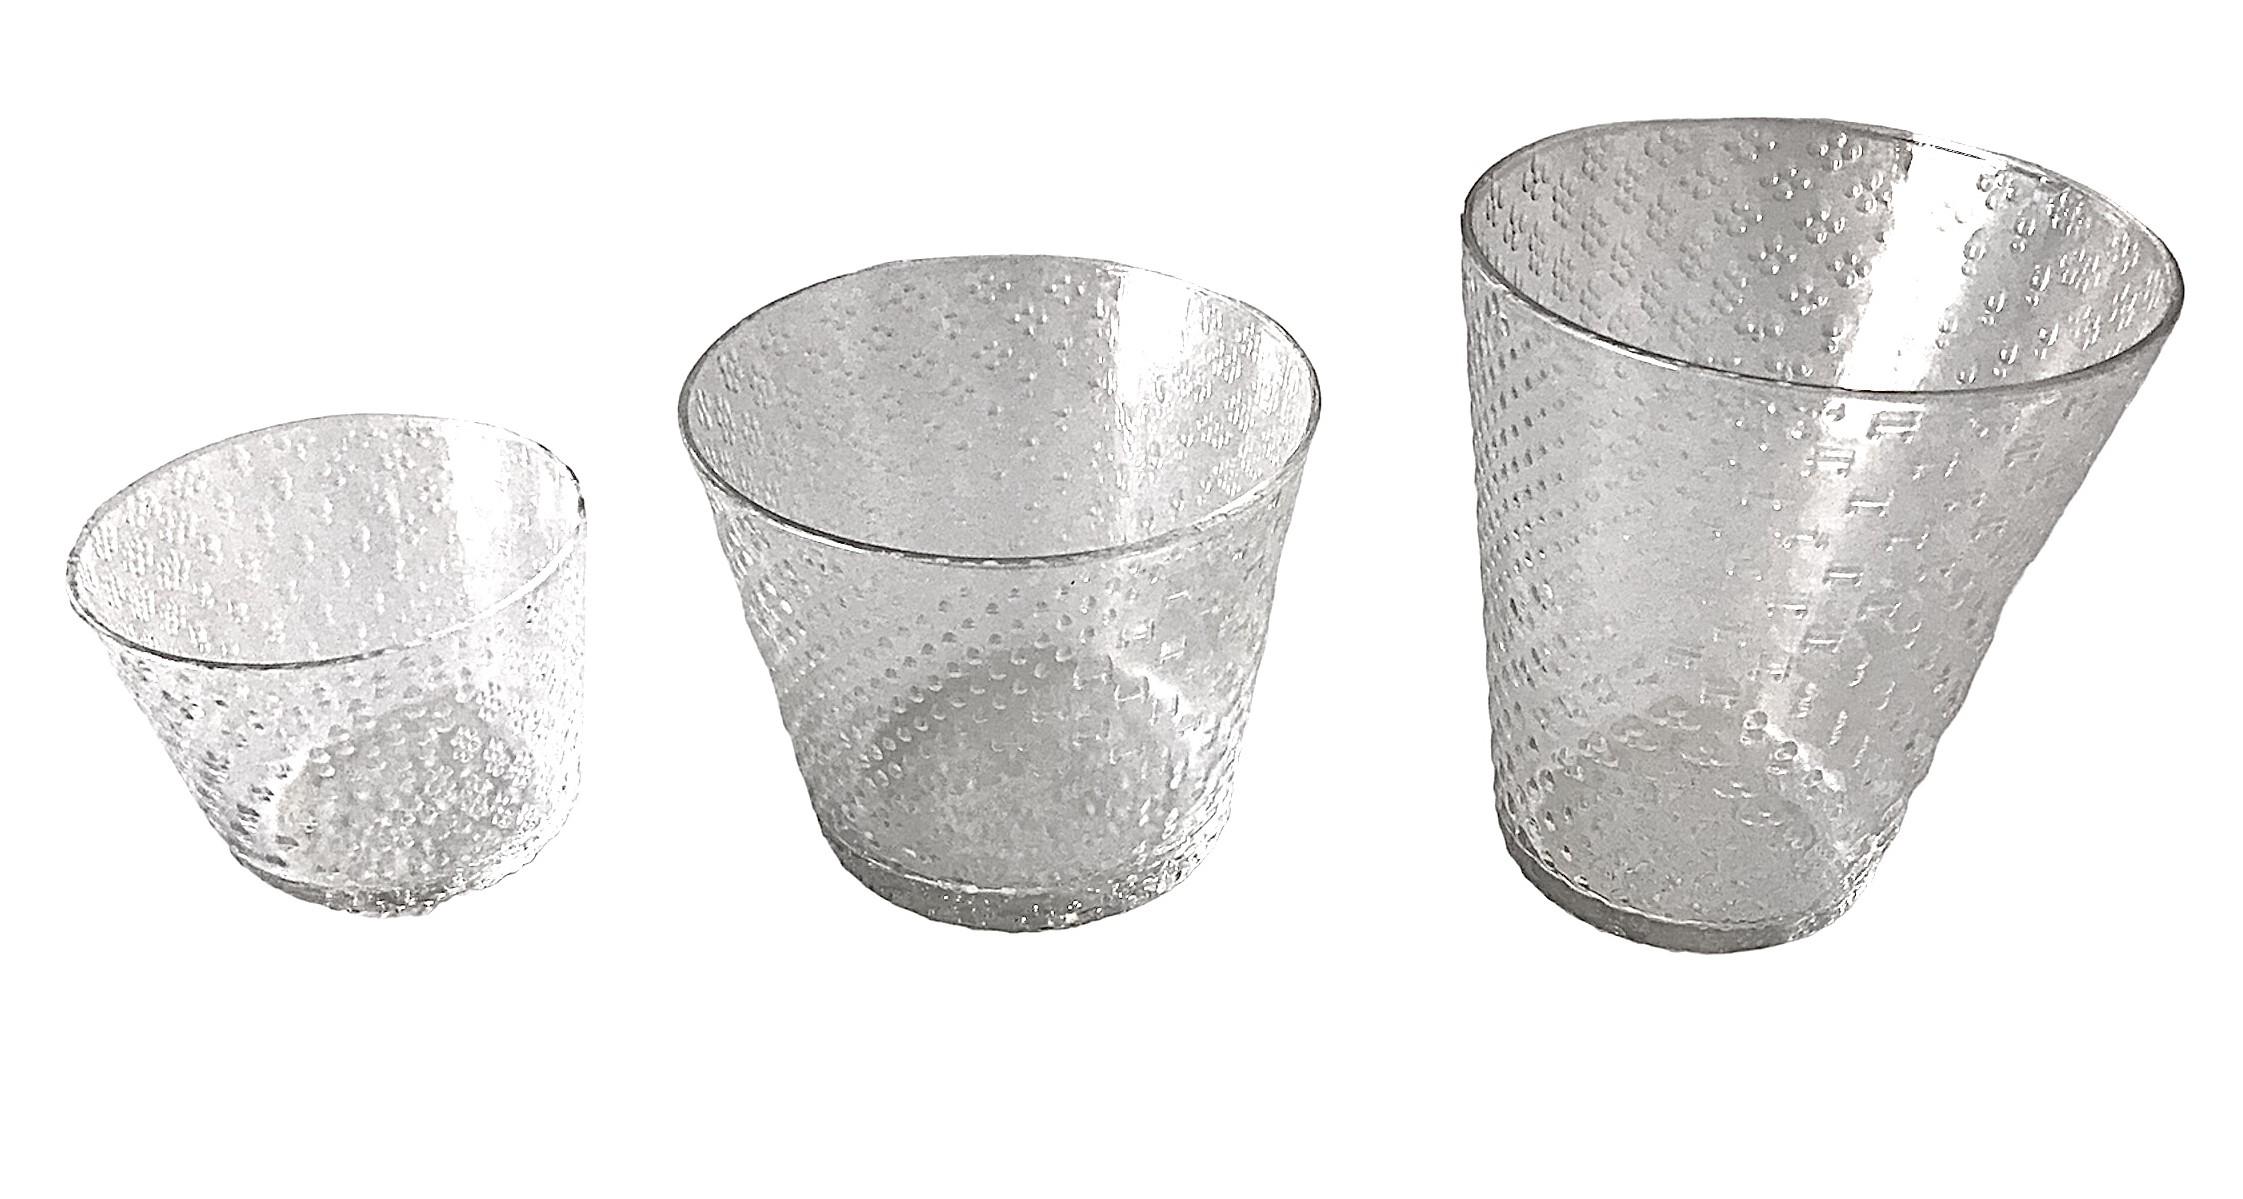 Design Modern de Oiva Toikka de 1970, verrerie Tundra pour Arabia, Finlande.    Le design est constitué de multiples petits motifs uniques influencés par  la toundra arctique.  Collection de verres transparents texturés inspirée par les rudes